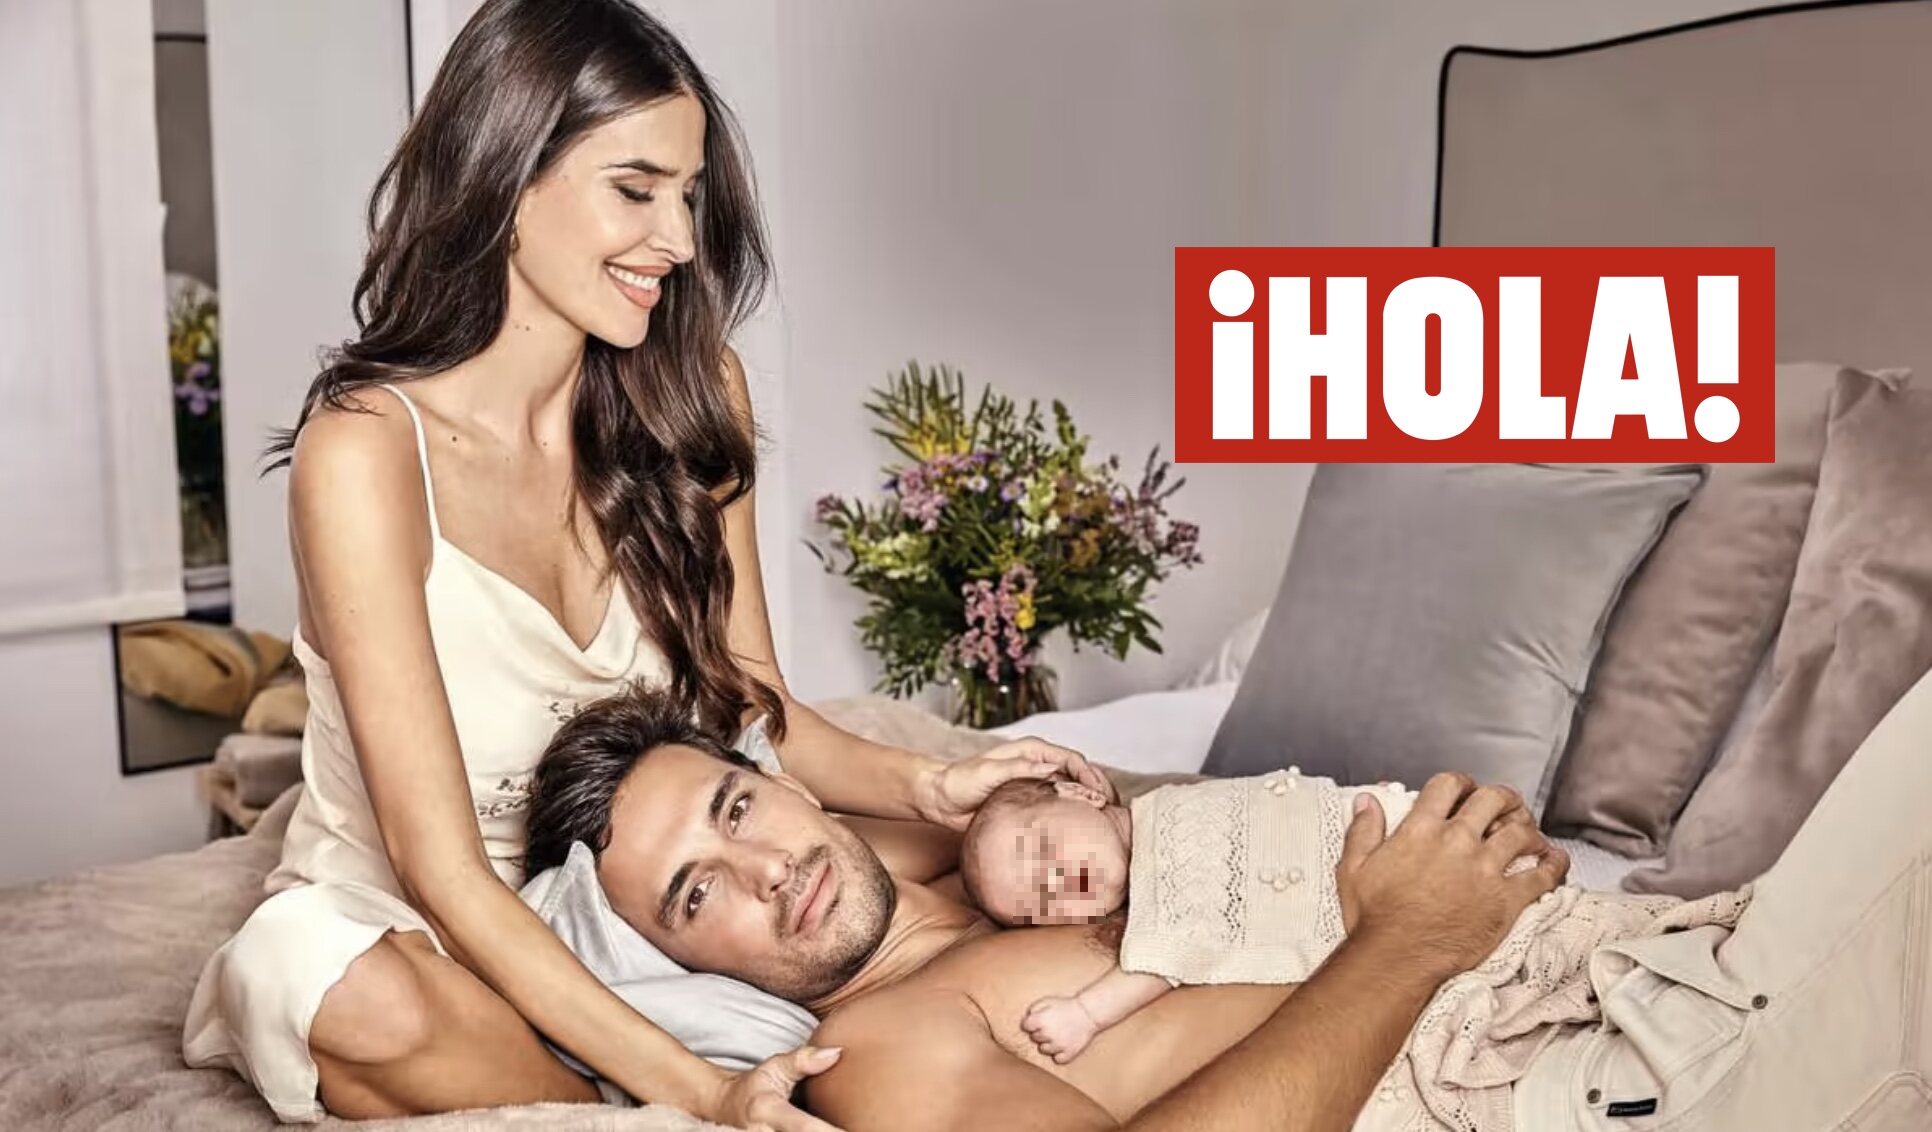 Jaime Astrain y Lidia Torrent con su hija en la revista ¡Hola!